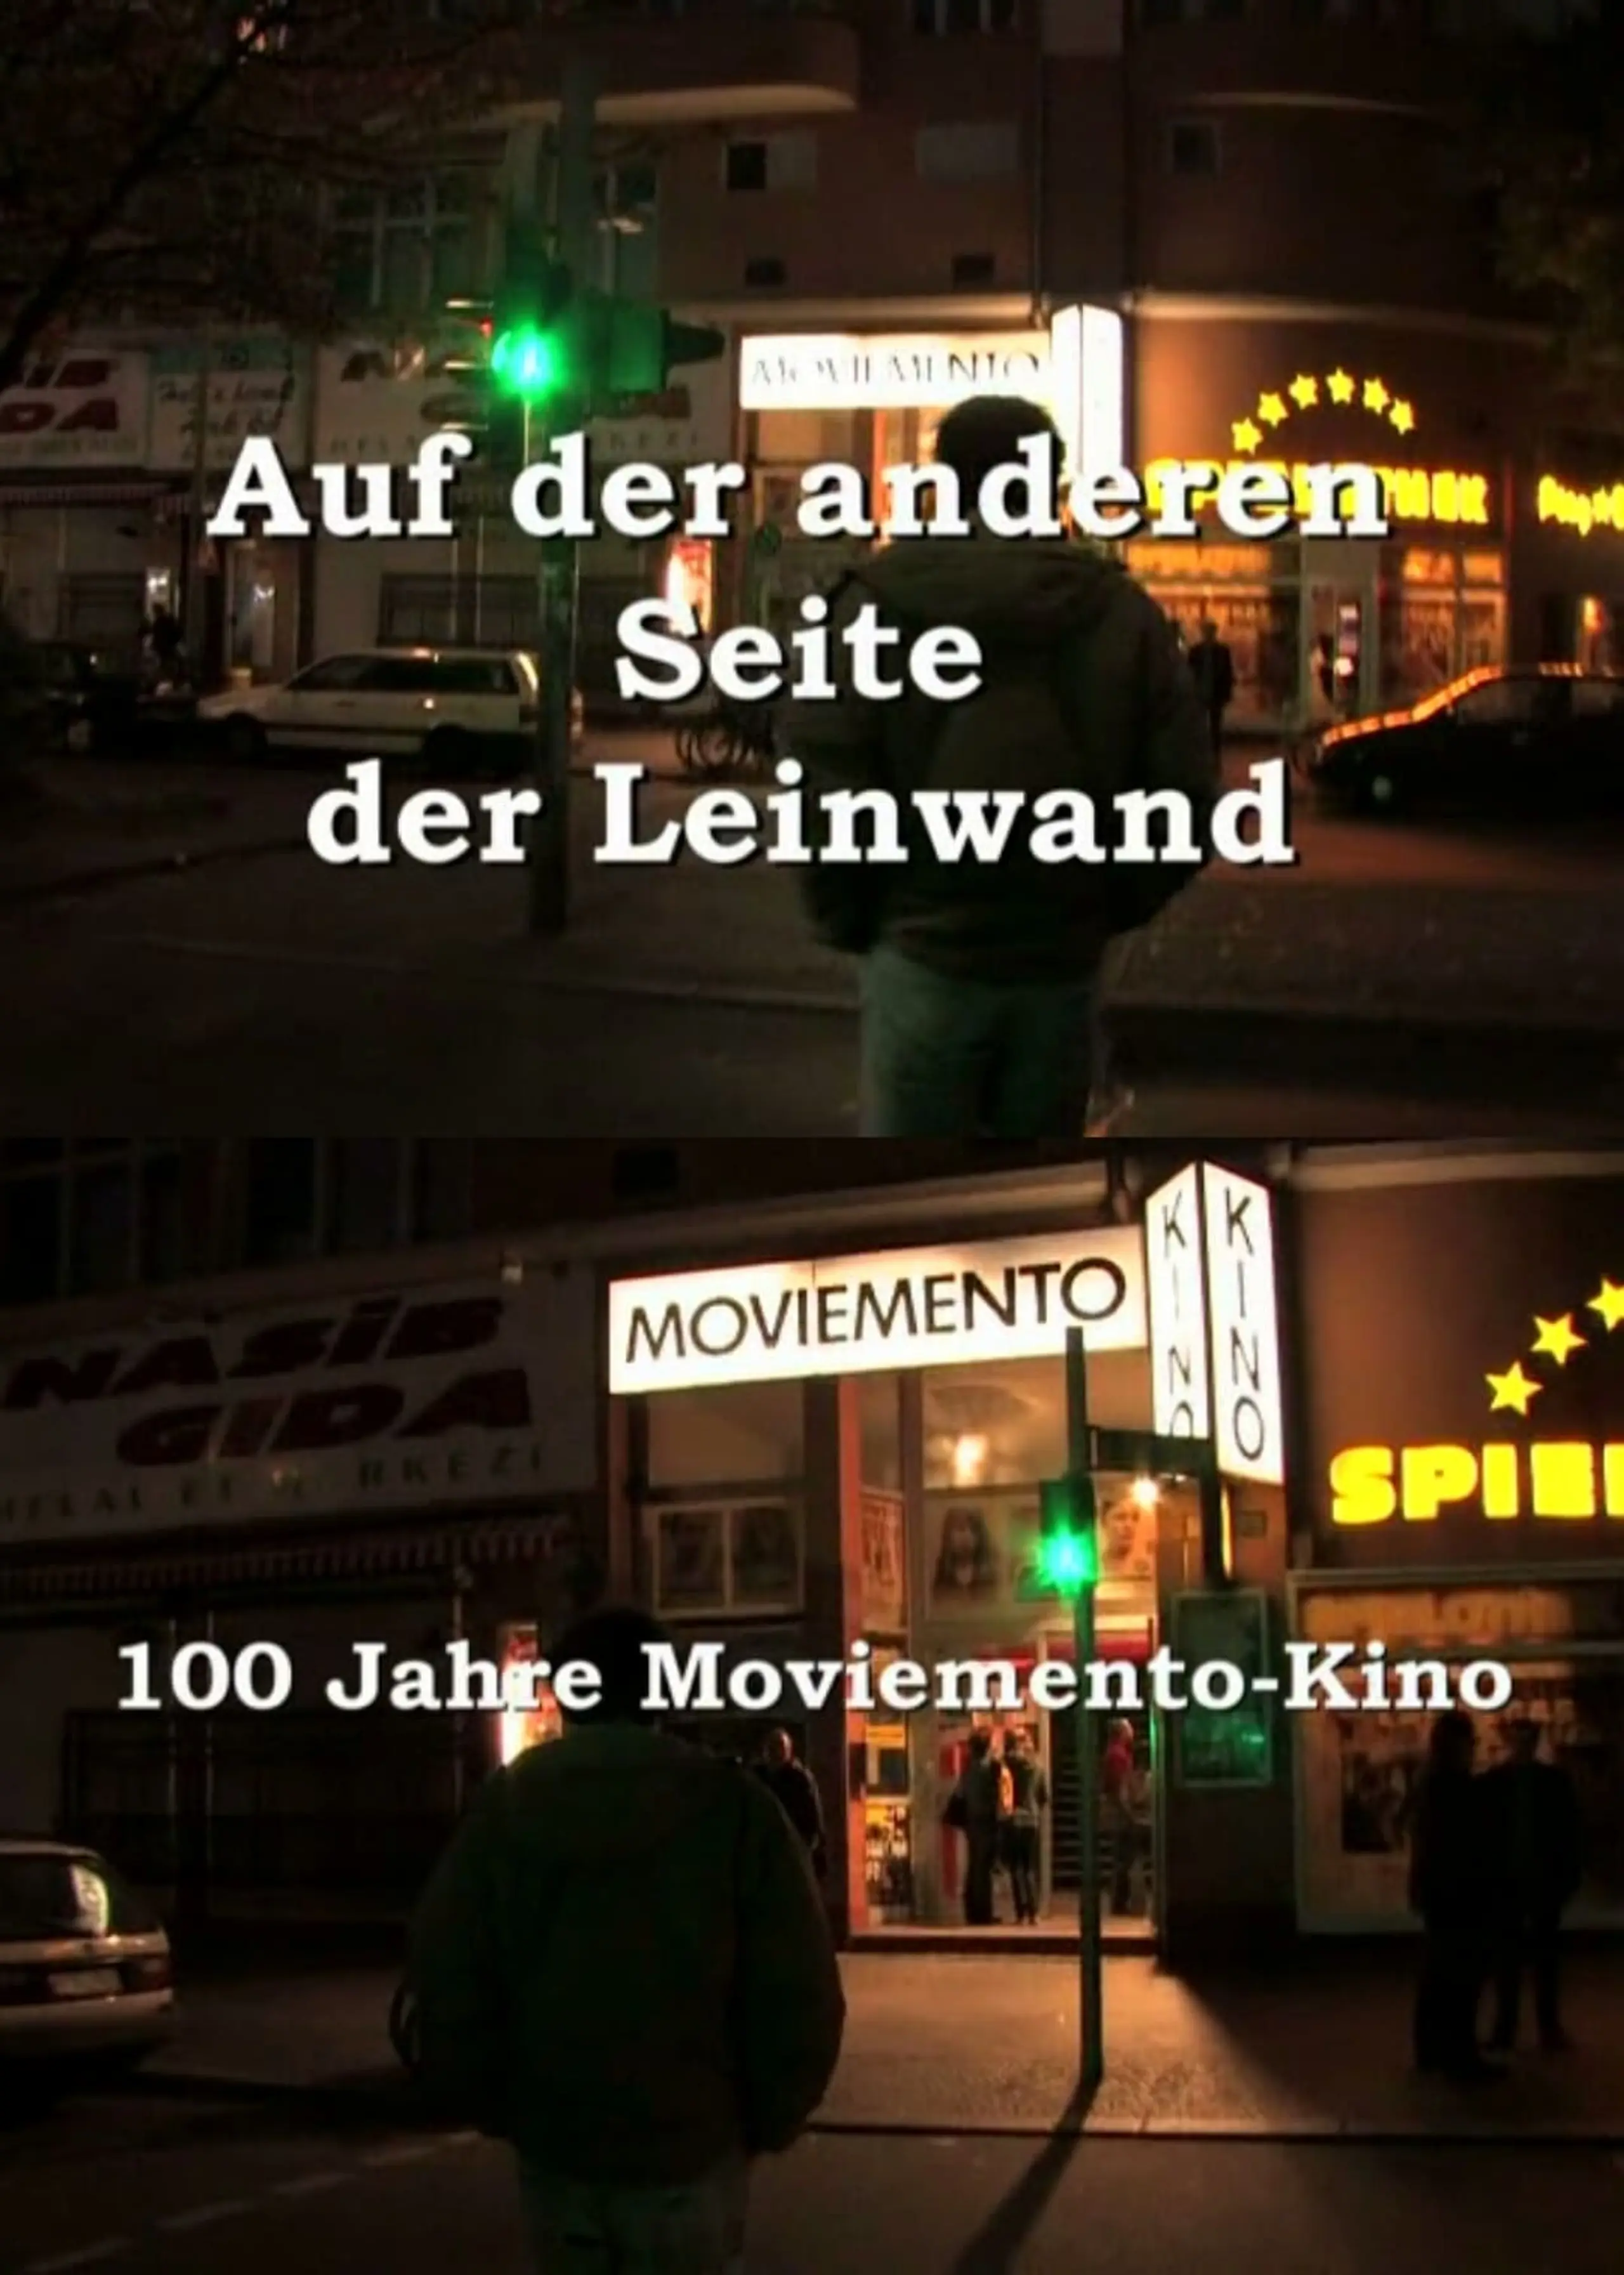 Auf der anderen Seite der Leinwand - 100 Jahre Moviemento Cinema